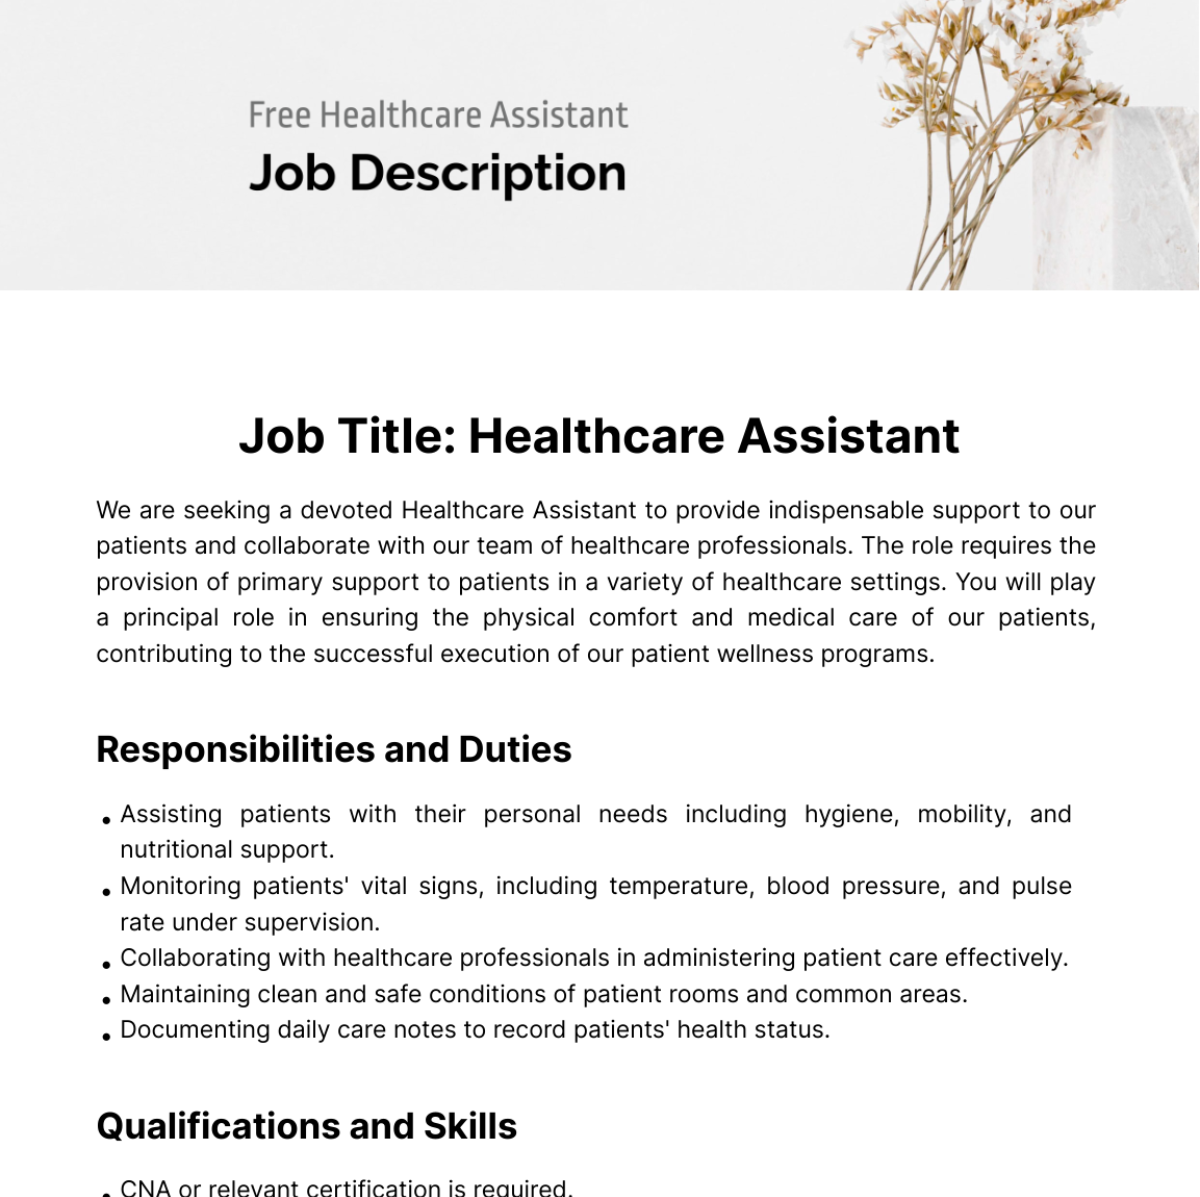 Free Healthcare Assistant Job Description Template